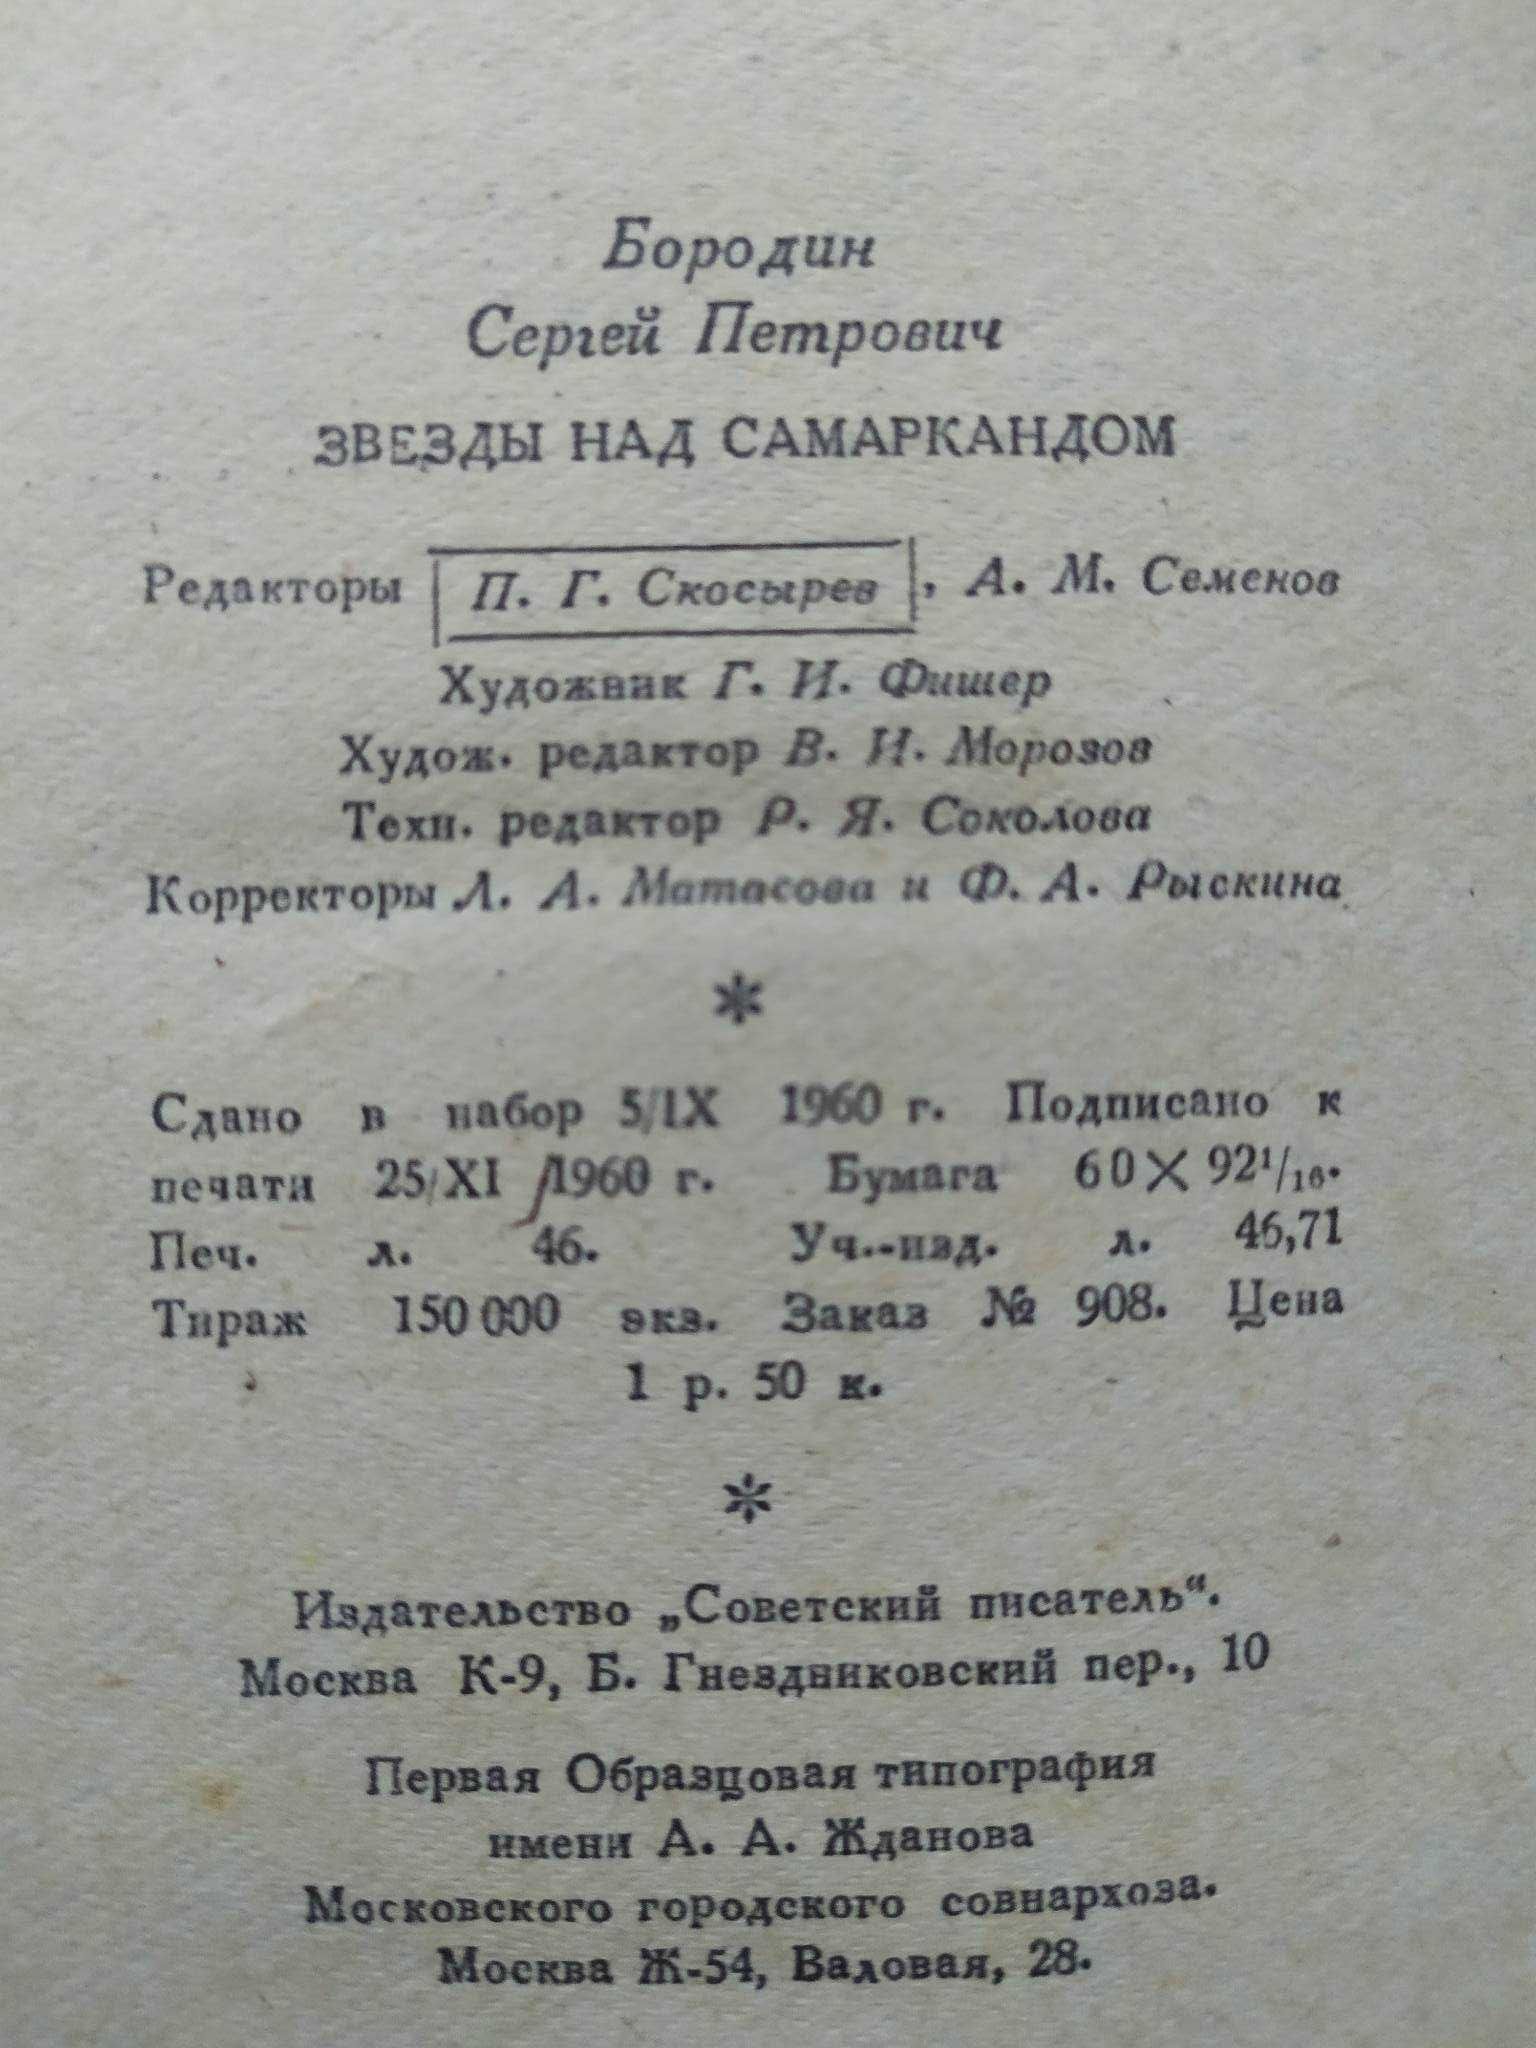 Книга "Звезды над Самаркандом" 1961 год изд.